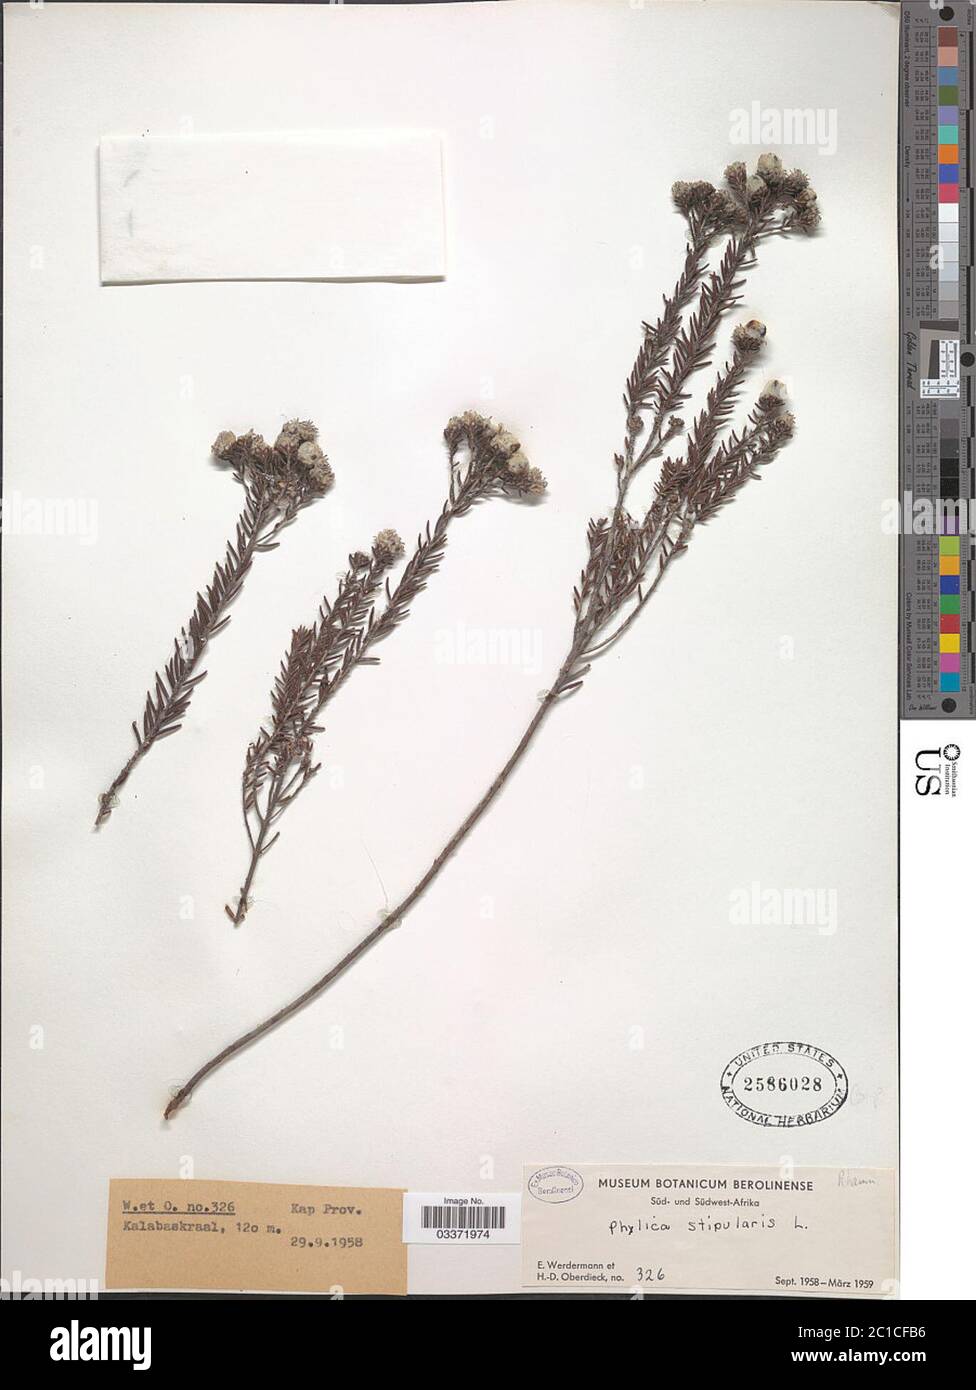 Phylica stipularis L Phylica stipularis L. Stock Photo